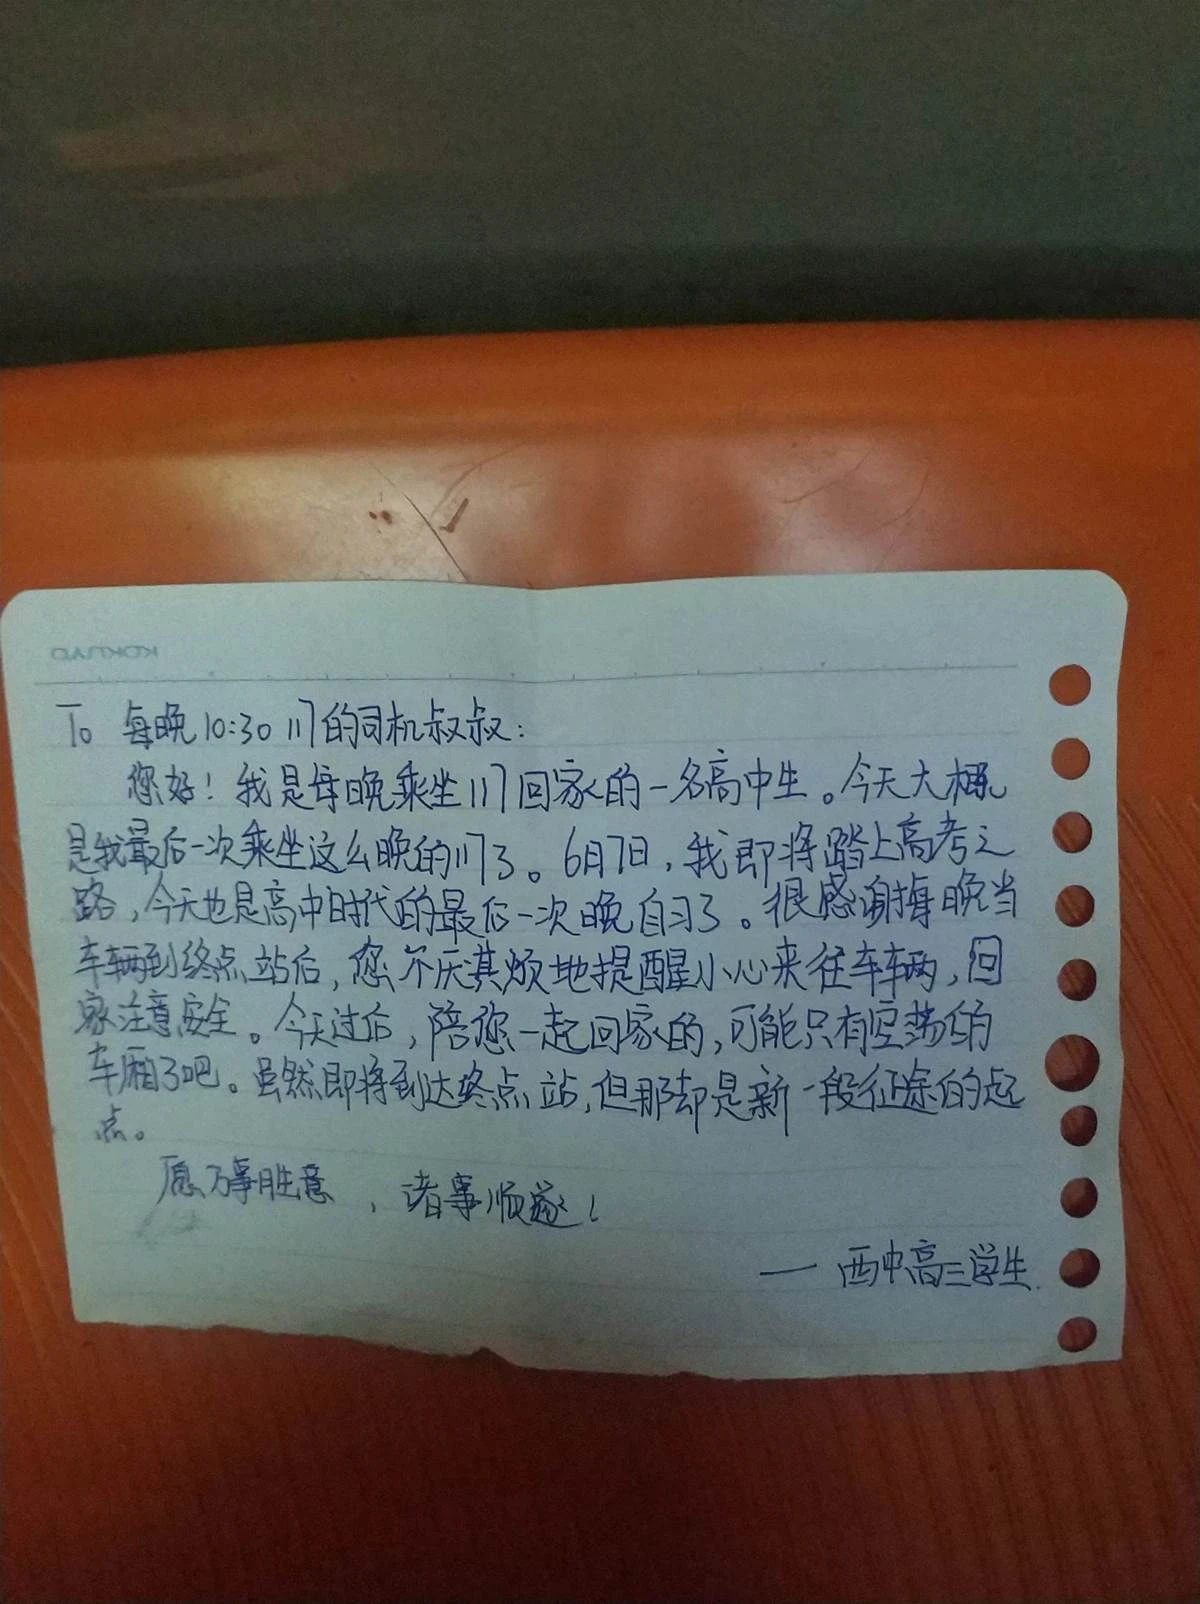 聯考前，高三女孩末班車上留下紙條「感謝每晚不厭其煩的提醒」，公車司機看哭了：一切都值得